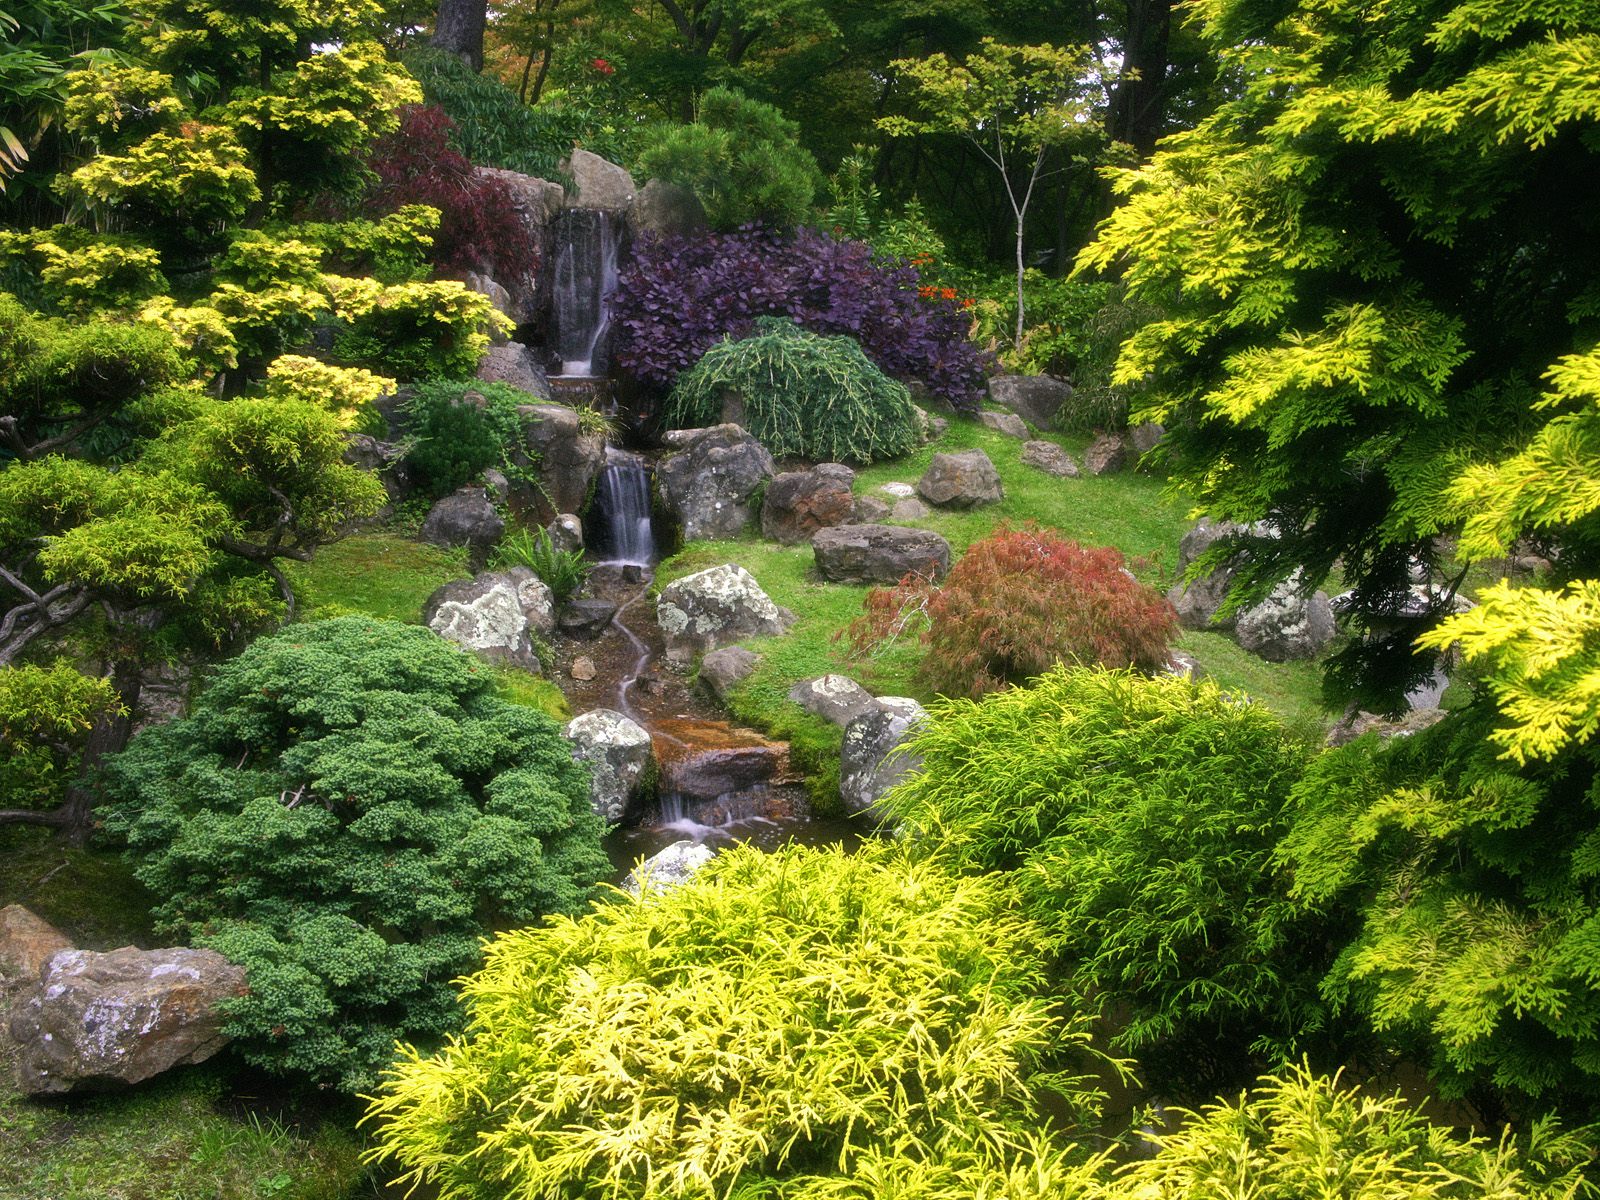 Japanese-Tea-Garden-Golden-Gate-Park-San-Francisco-California